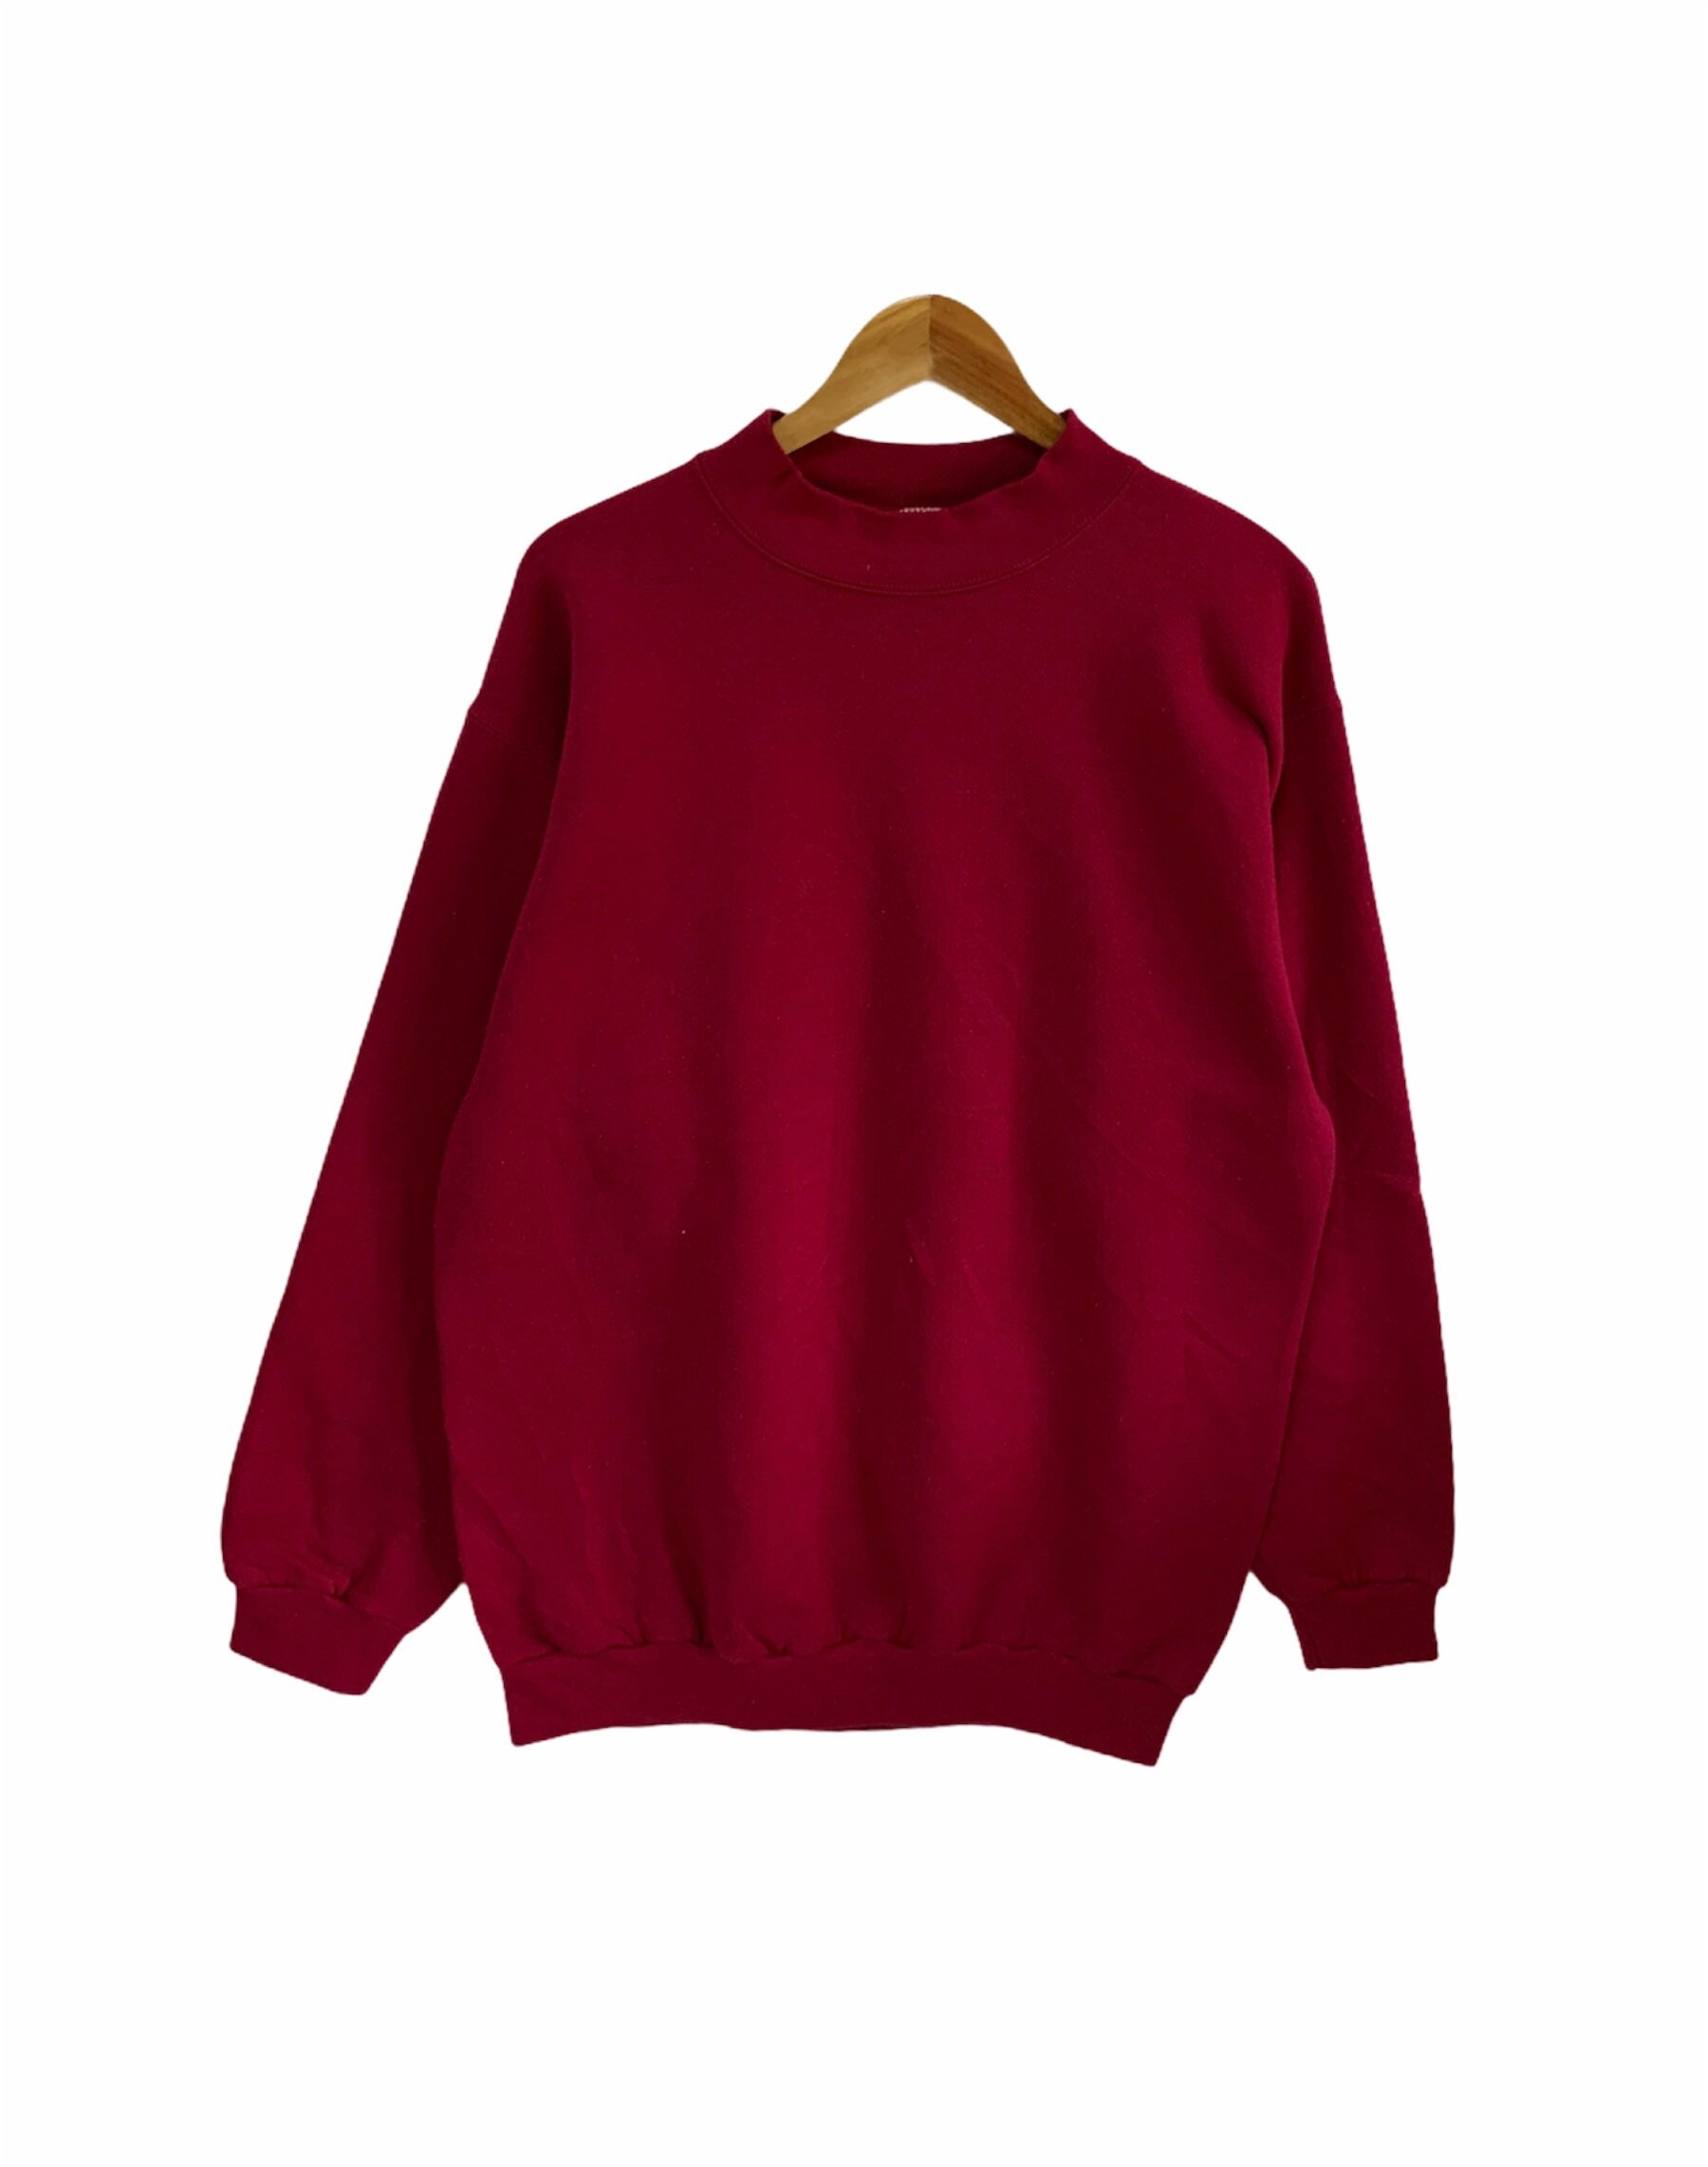 Vintage 90Er Jahre Rosa Sweatshirt Sweater Pullover Rollkragen Großgröße Made in Usa Oberbekleidung Fashion Casual Wear Neuwertiger Zustand von FongfongStudio